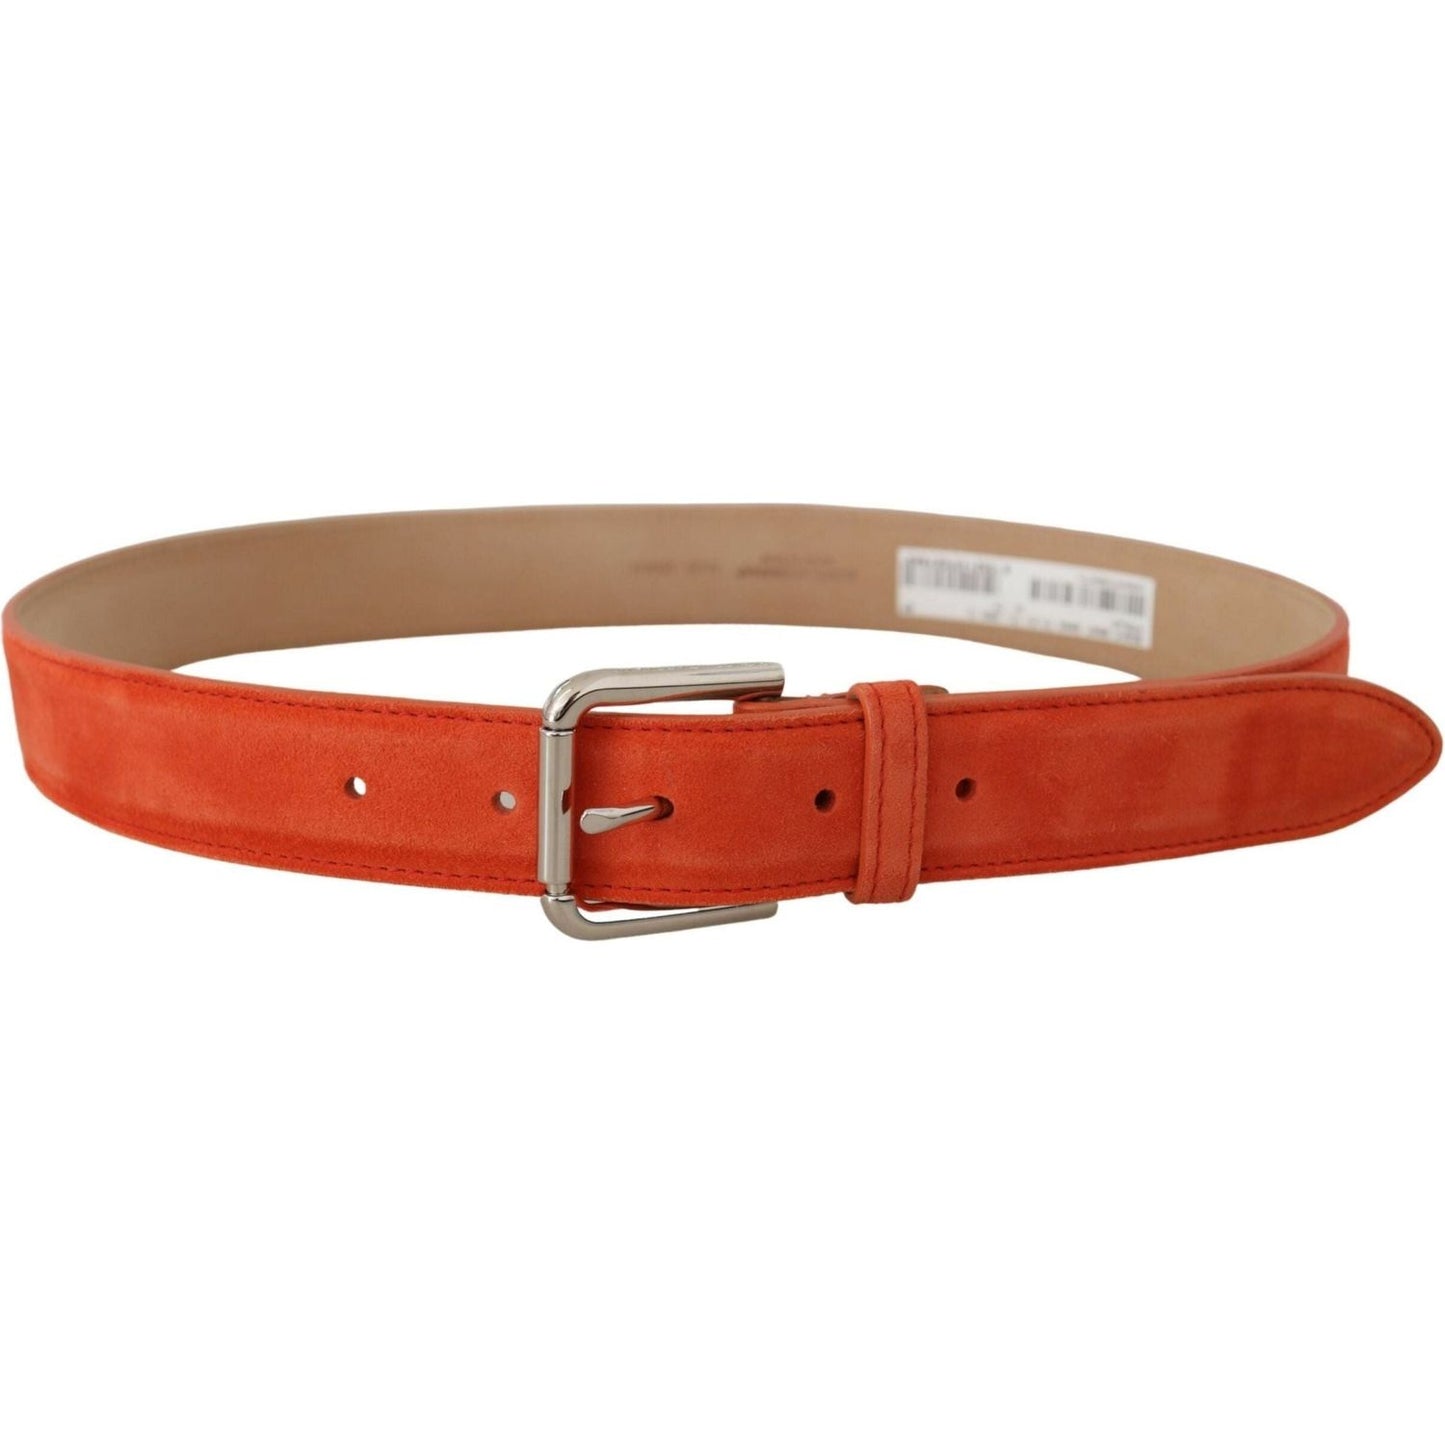 Dolce & Gabbana Elegant Suede Leather Belt in Vibrant Orange orange-leather-suede-silver-logo-metal-buckle-belt IMG_8850-scaled-4479afce-a45.jpg